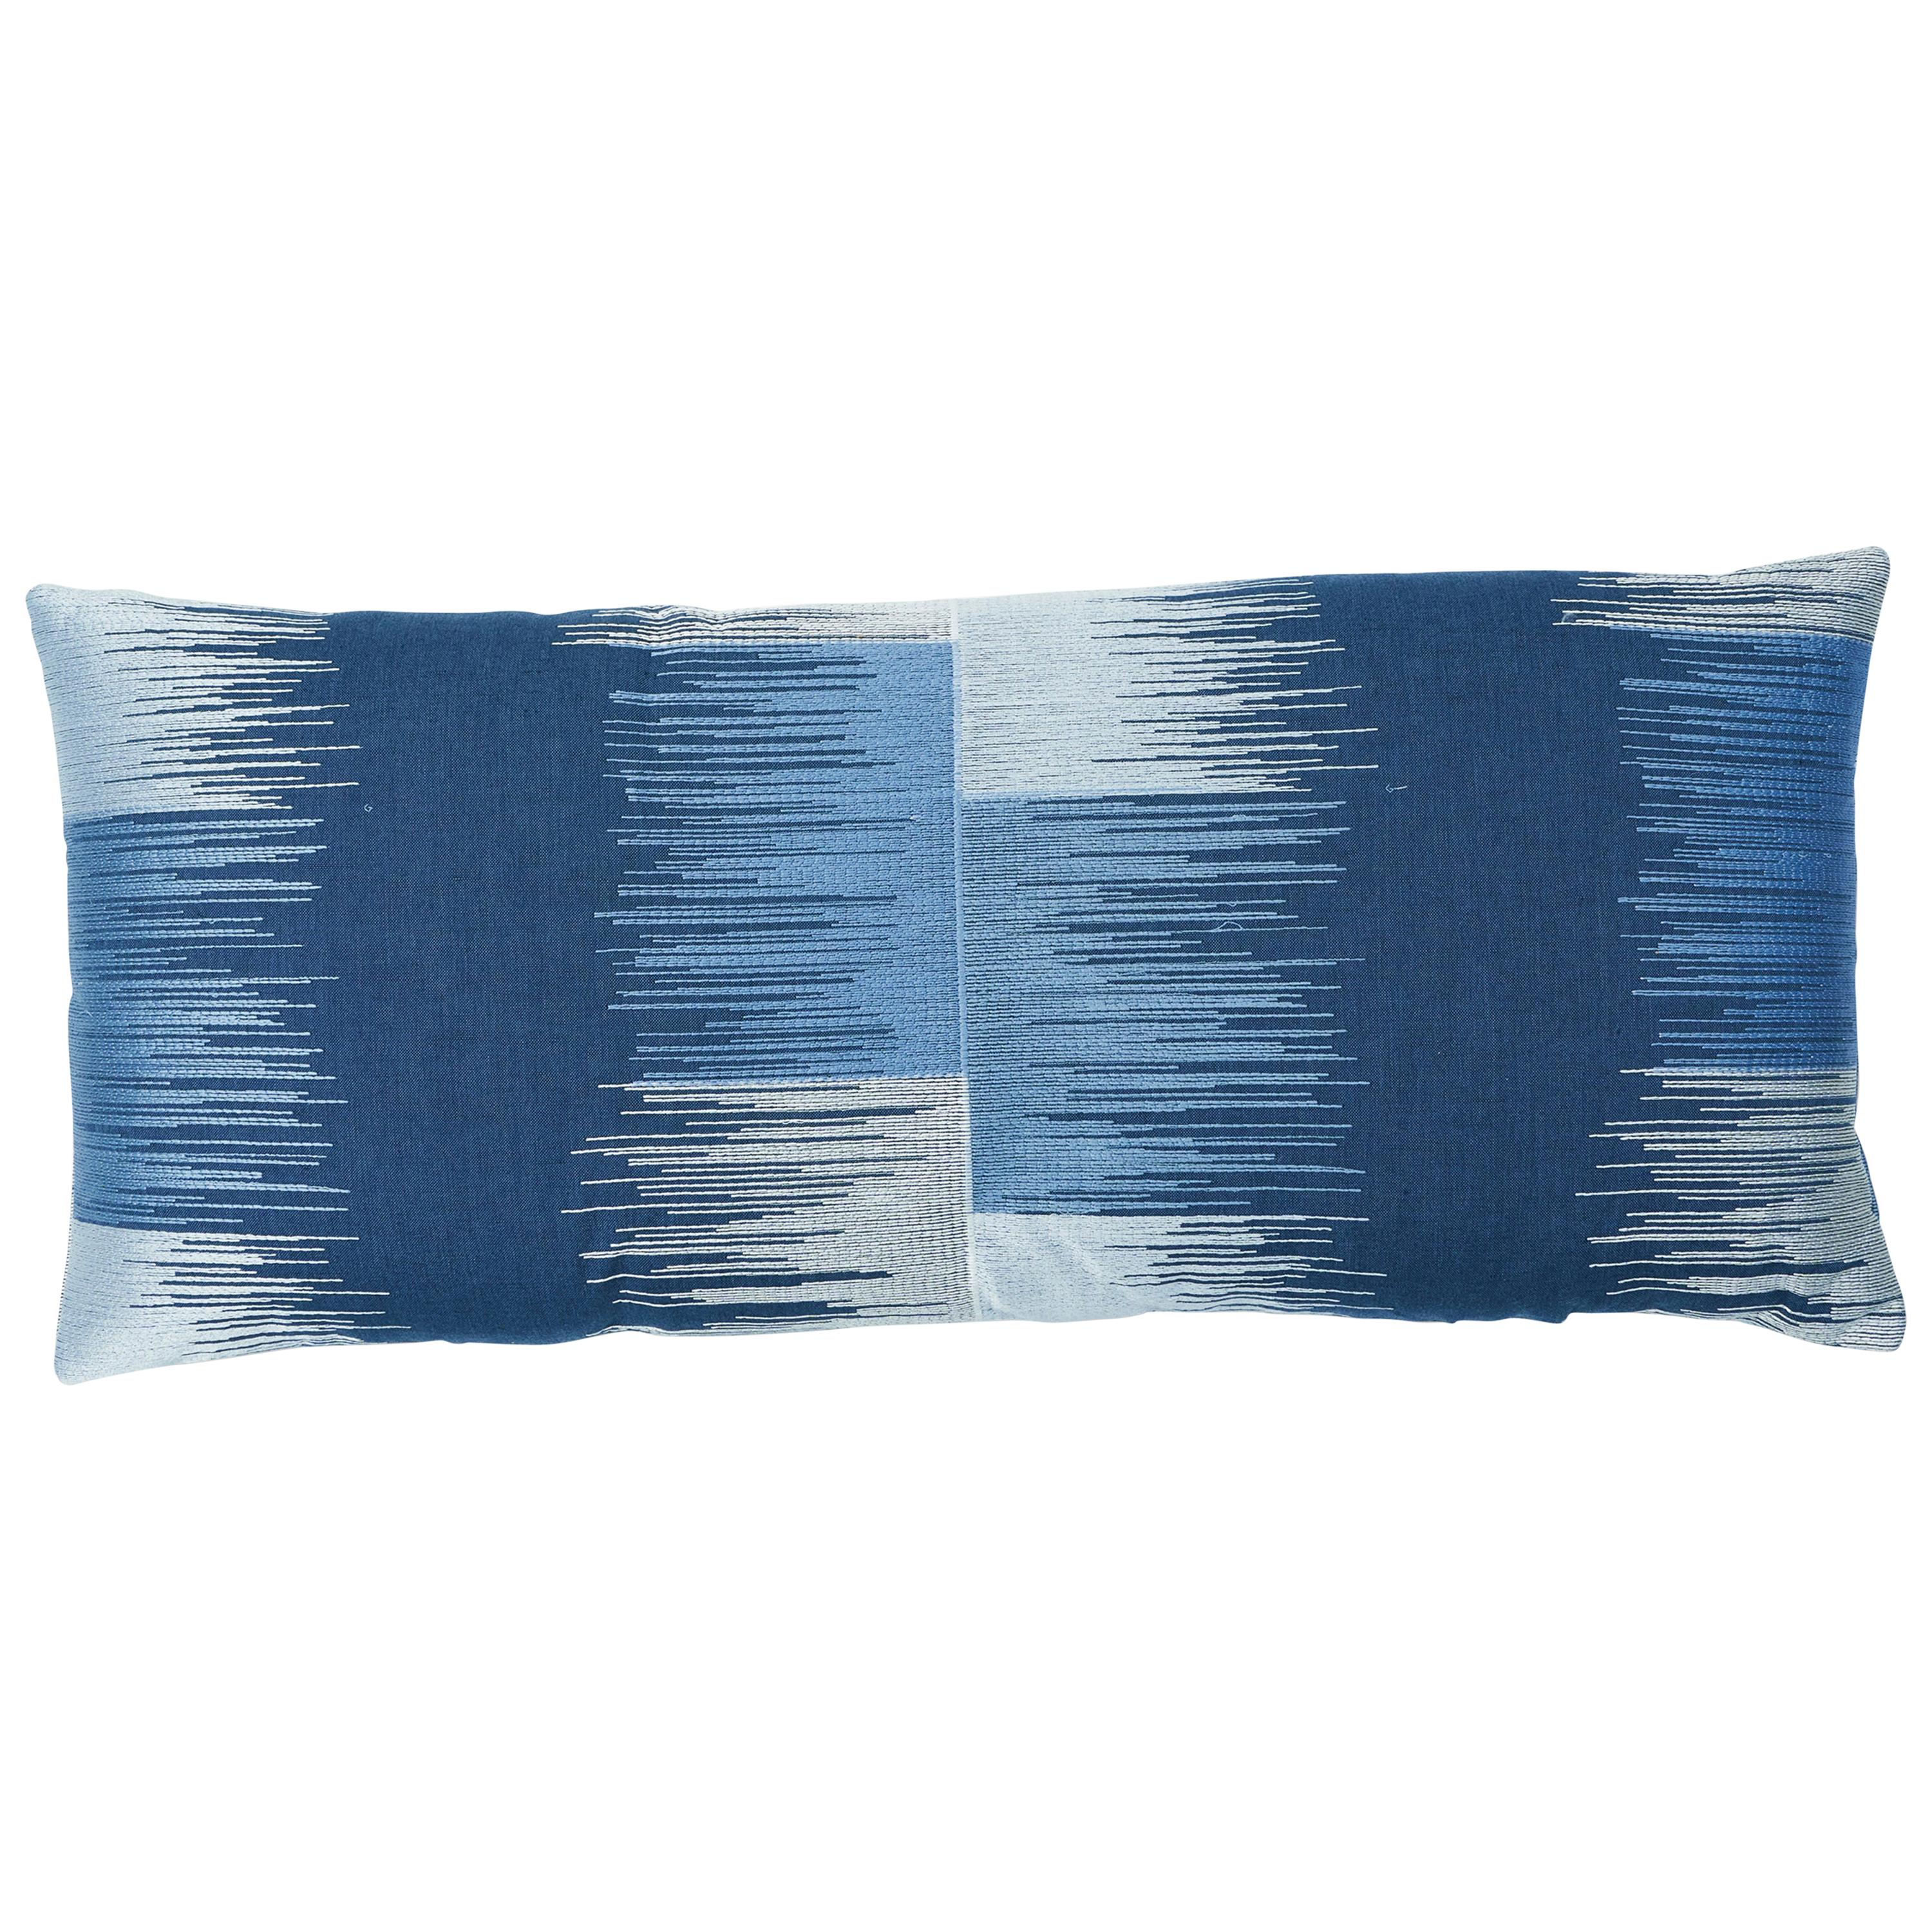 Schumacher Sunburst Stripe Embroidery Pillow in Blue